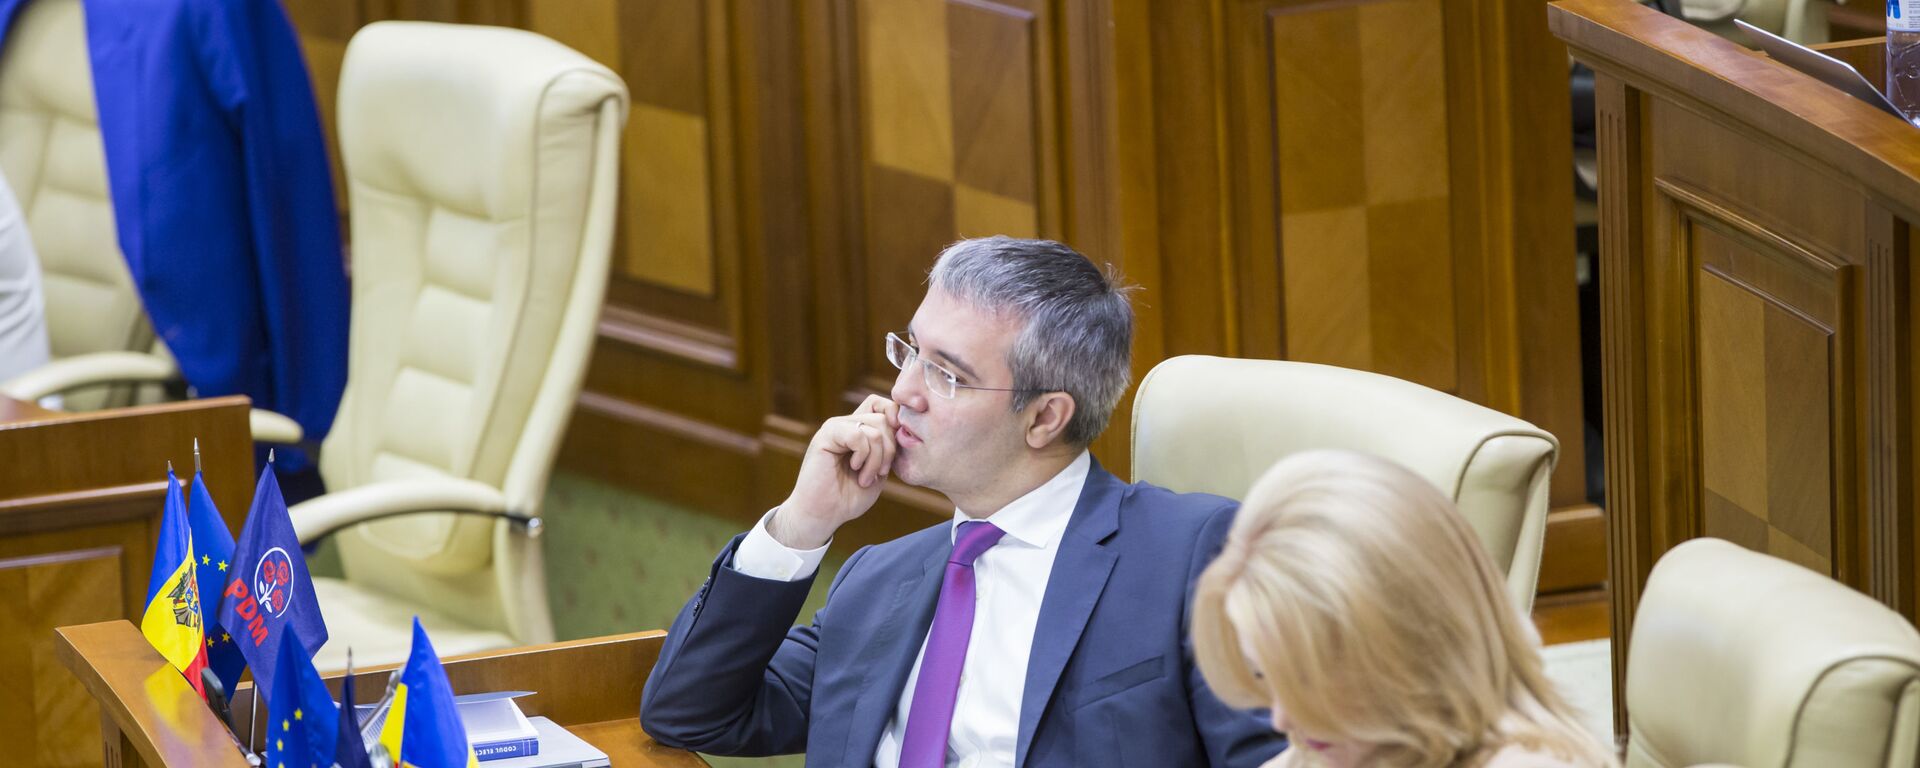 Заседание Парламента  - Sputnik Молдова, 1920, 26.02.2021